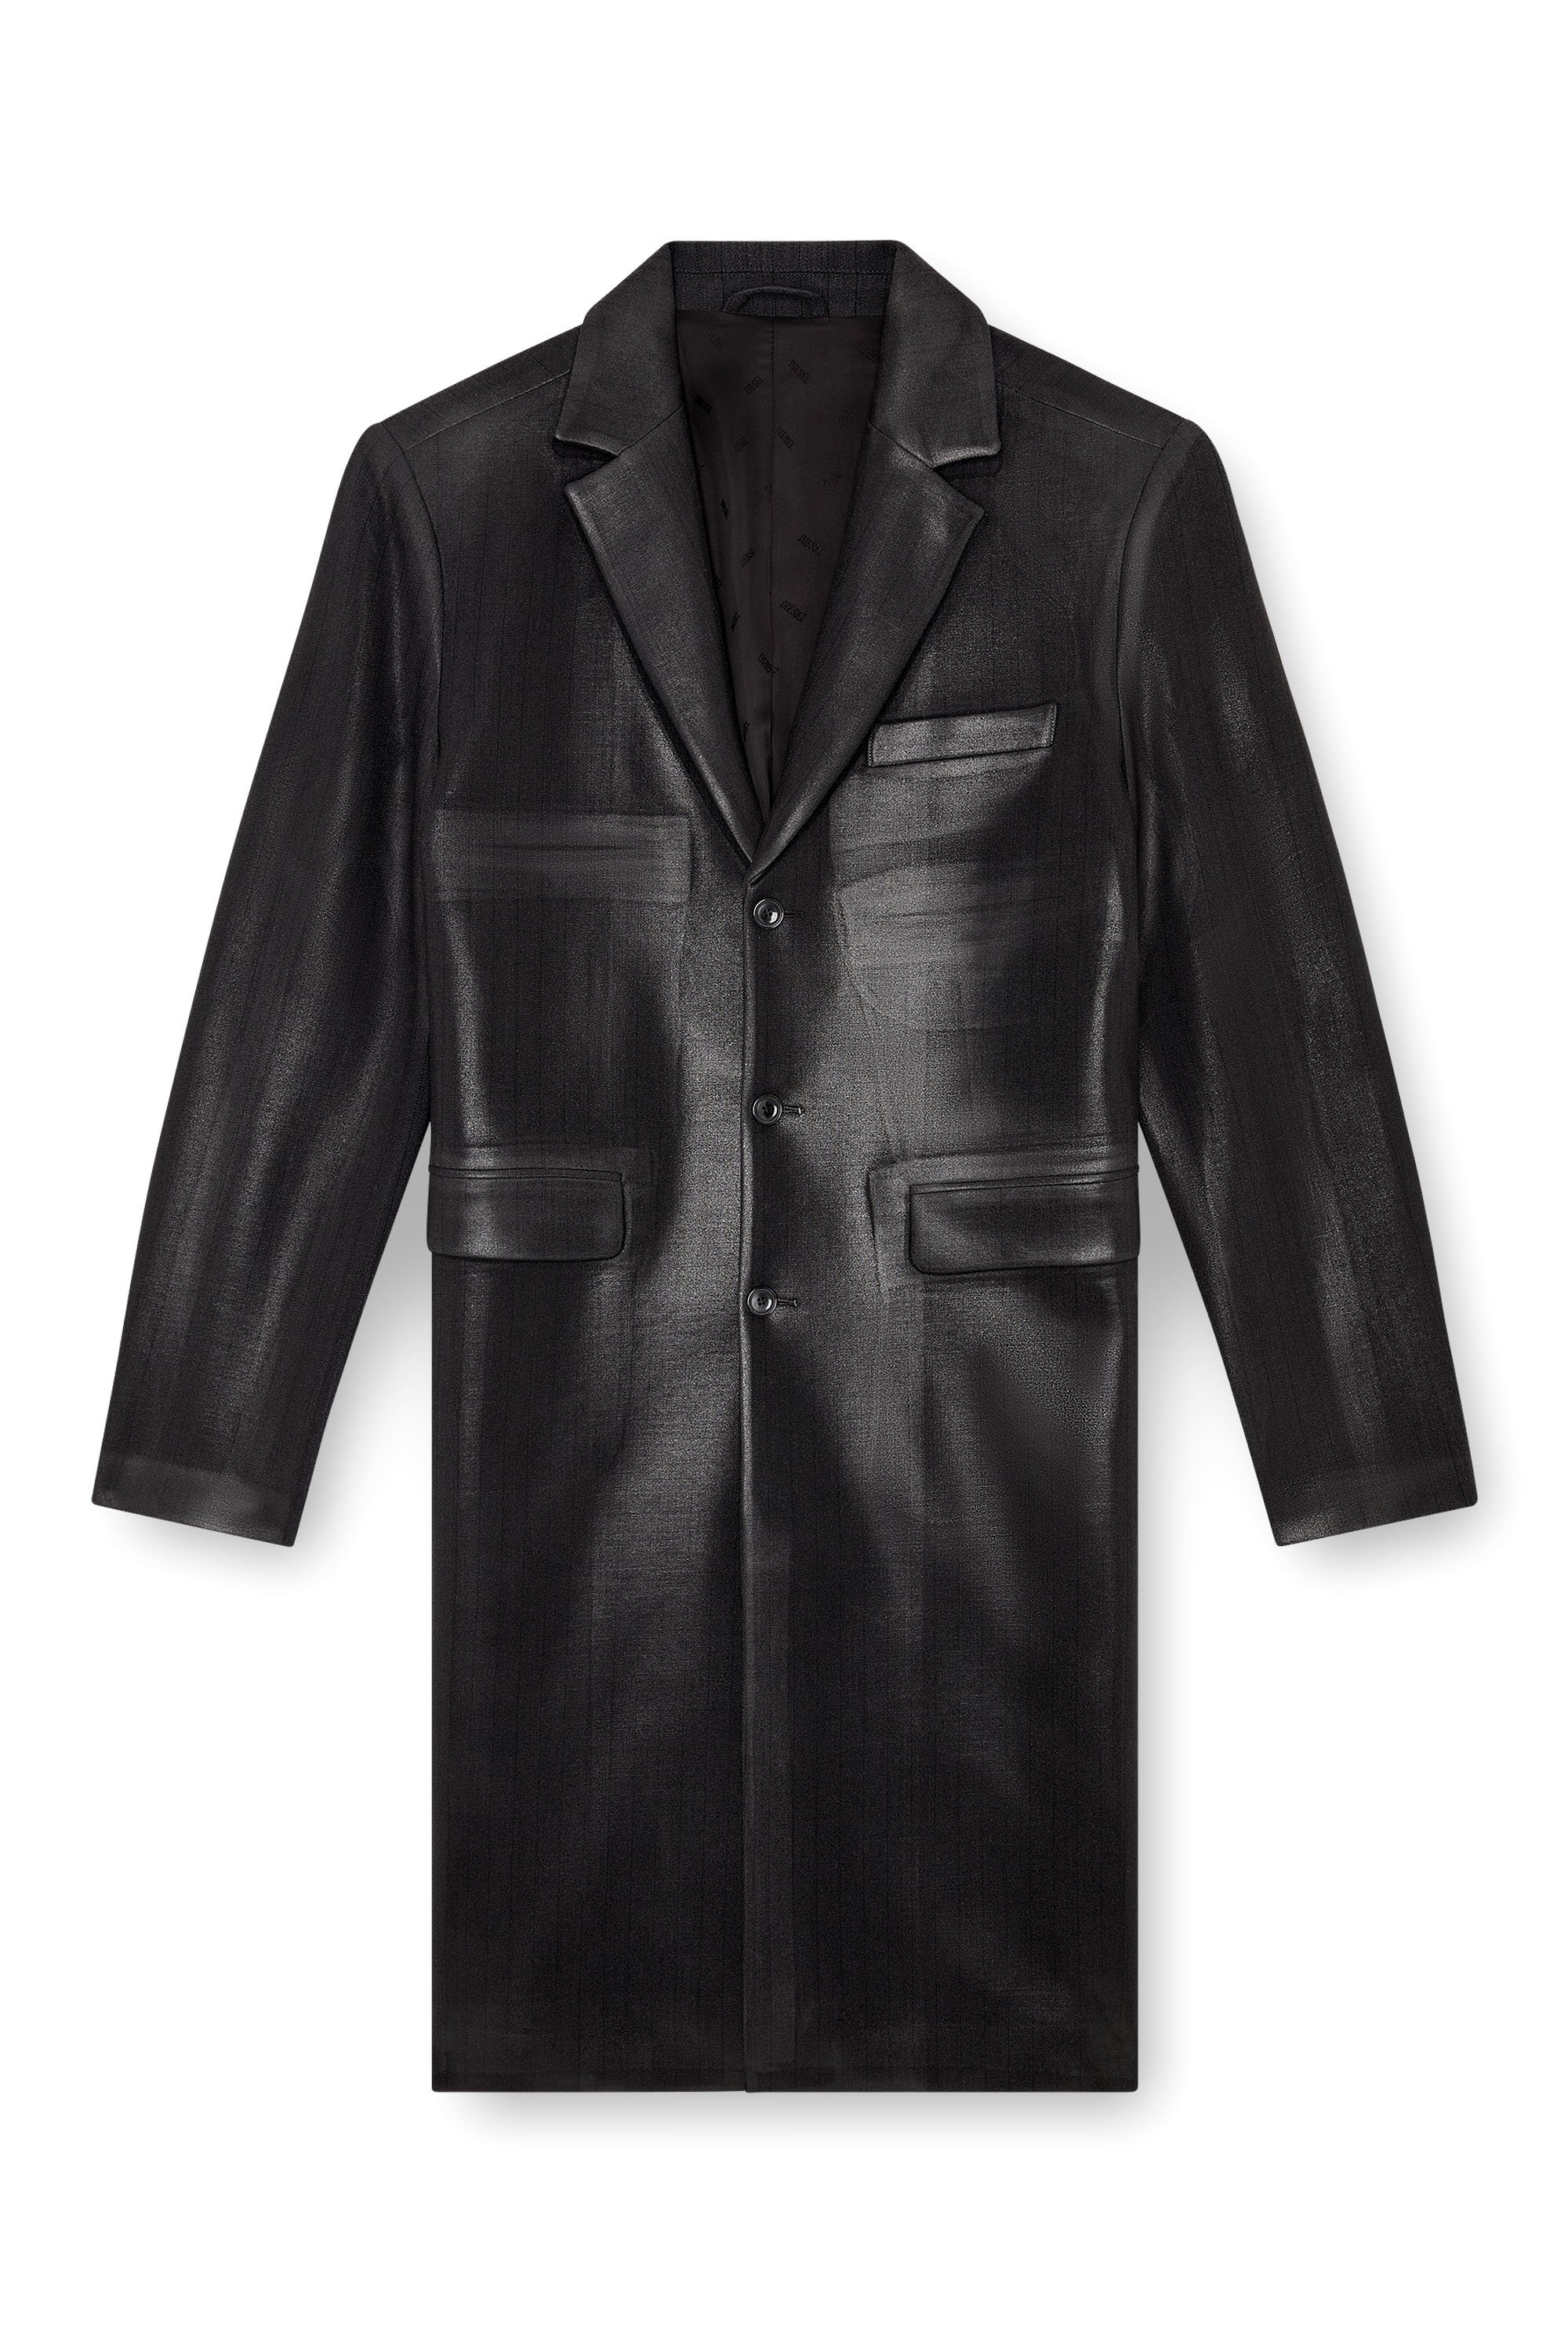 Diesel - J-DENNER, Man Coat in pinstriped cool wool in Black - Image 3